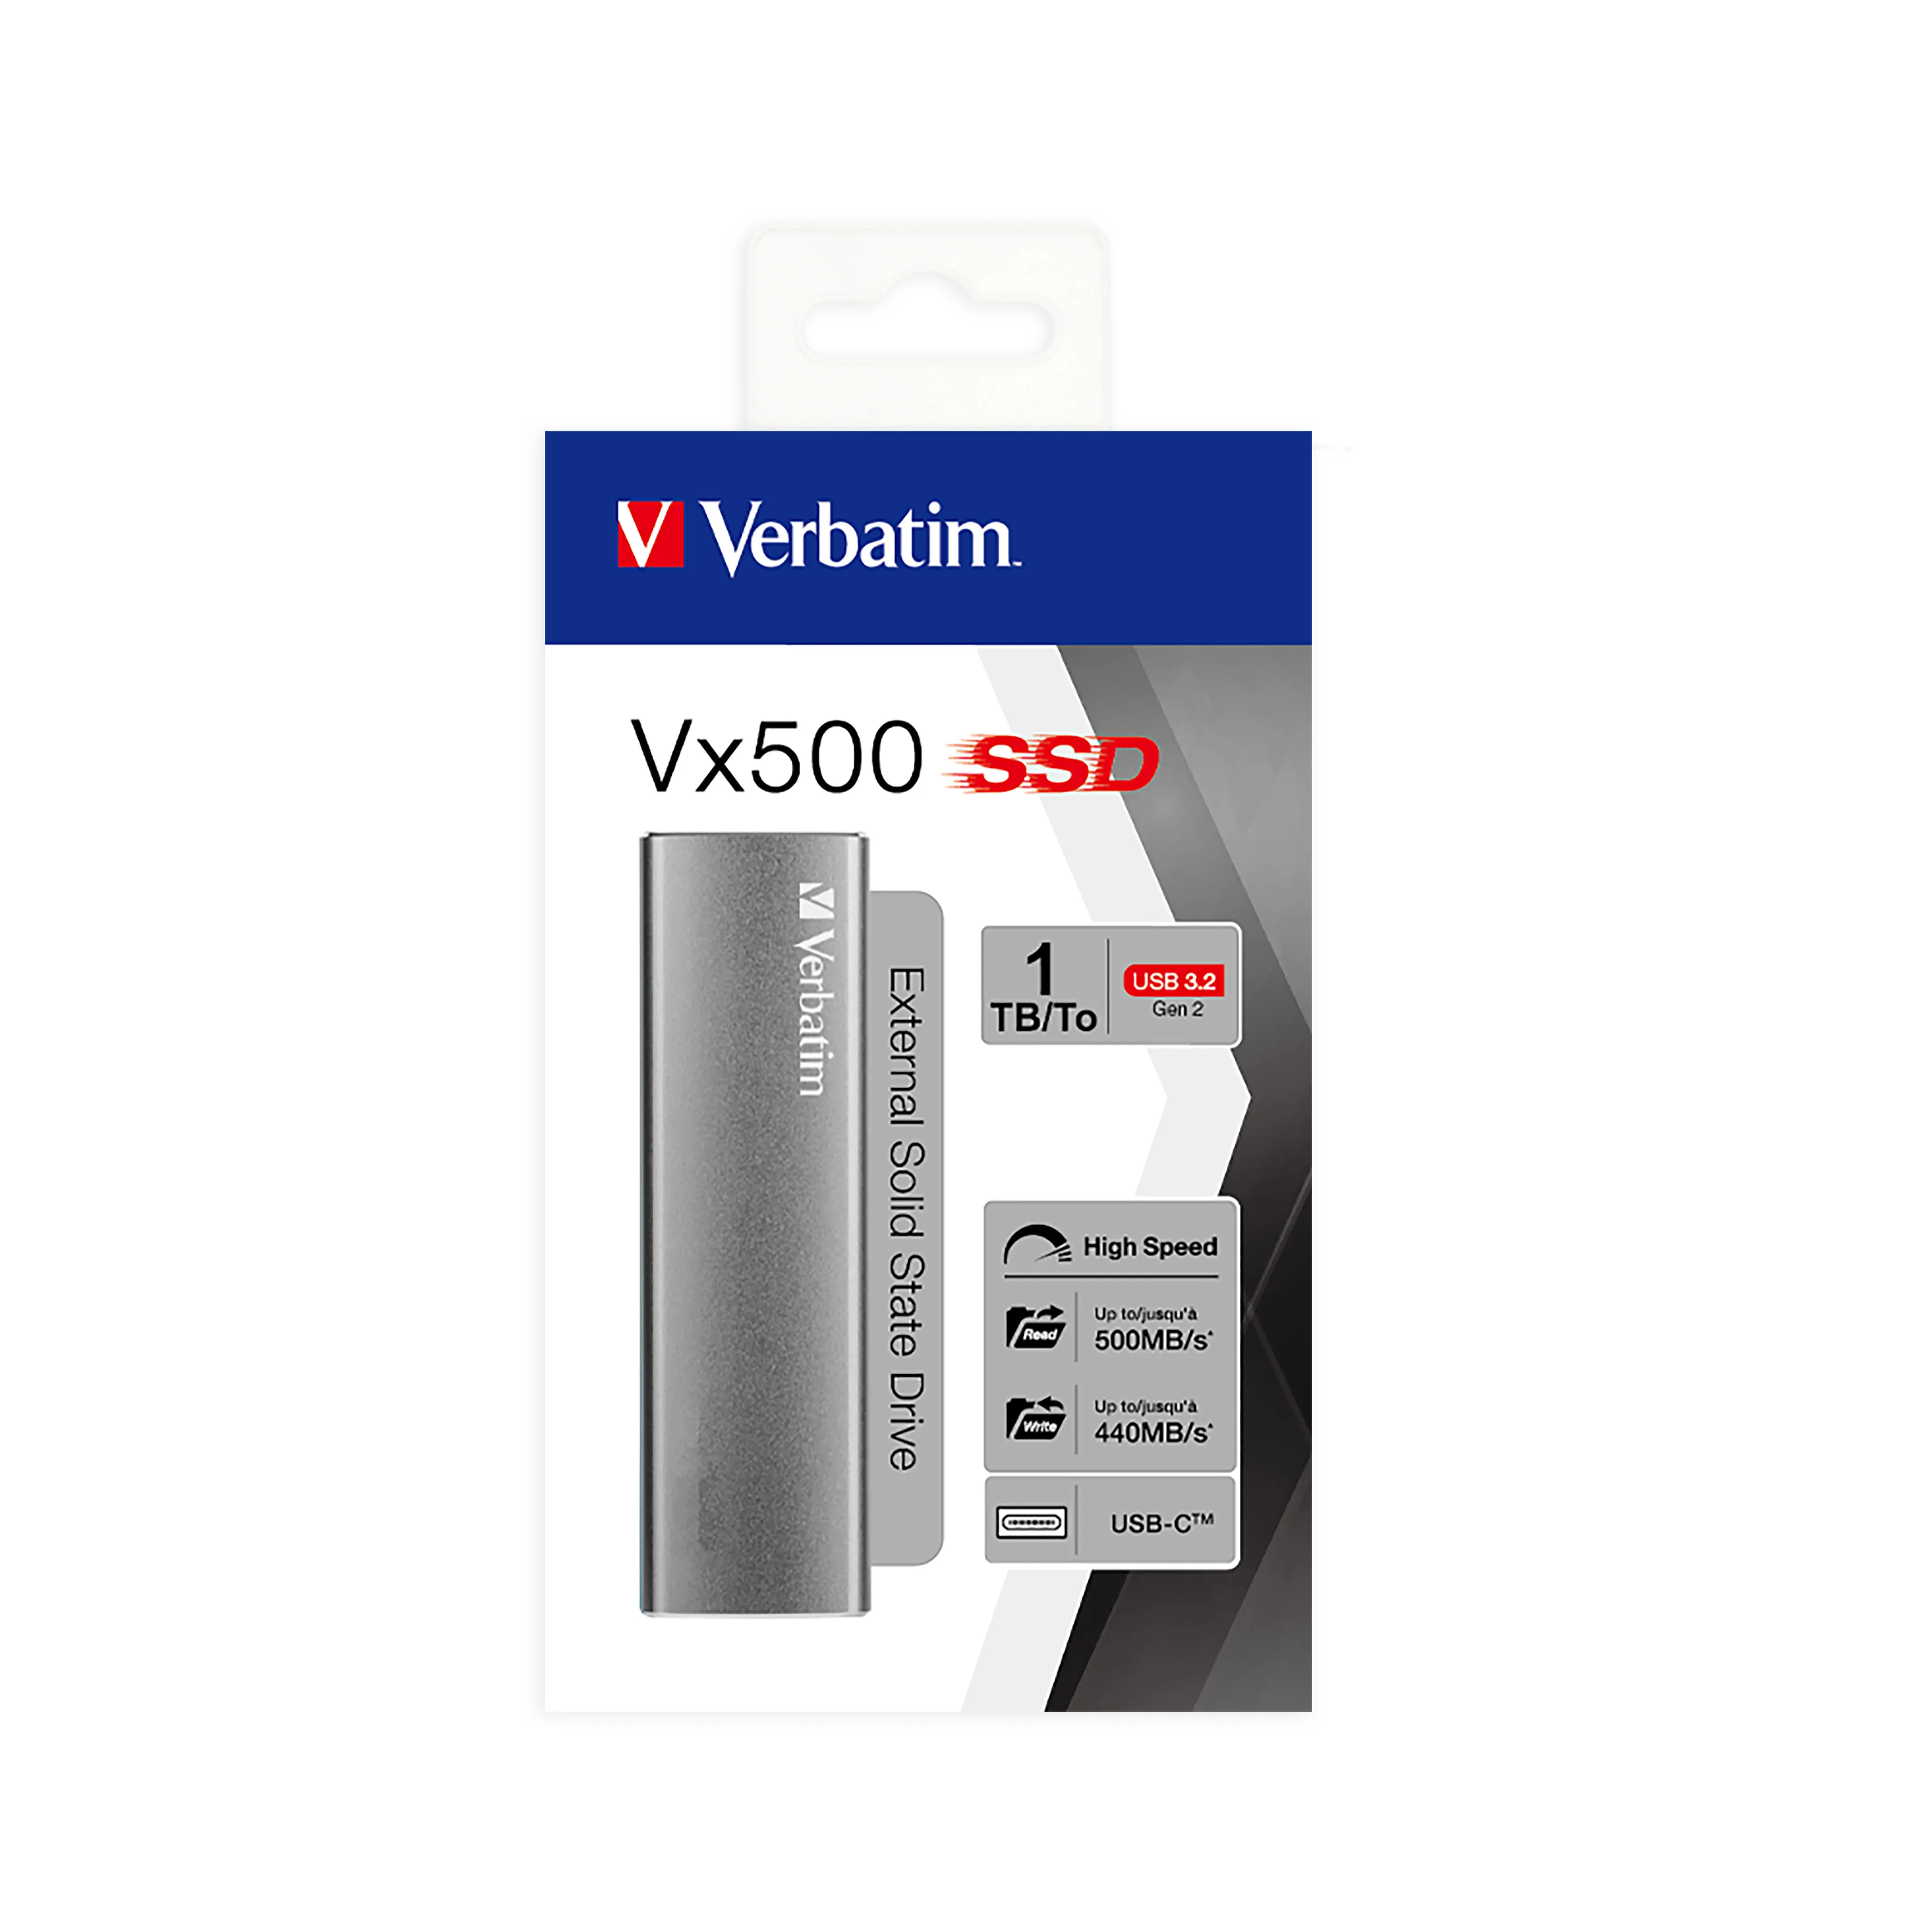 Achat Verbatim Vx500 sur hello RSE - visuel 3